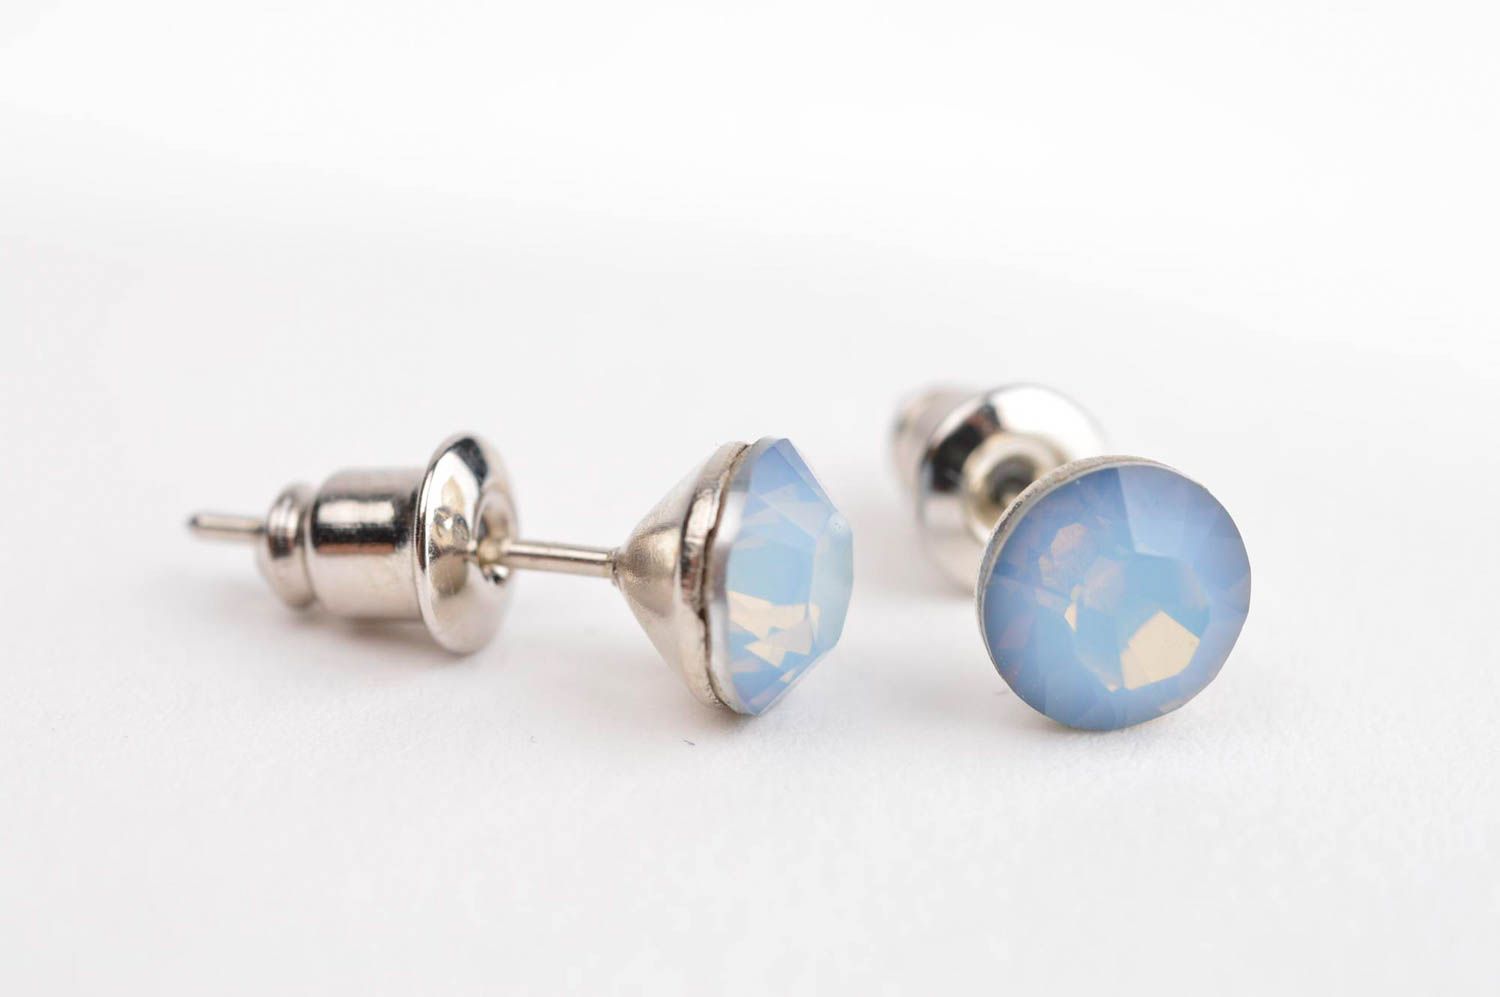 Handmade crystal earrings metal earrings with beads stud earrings for girls photo 2